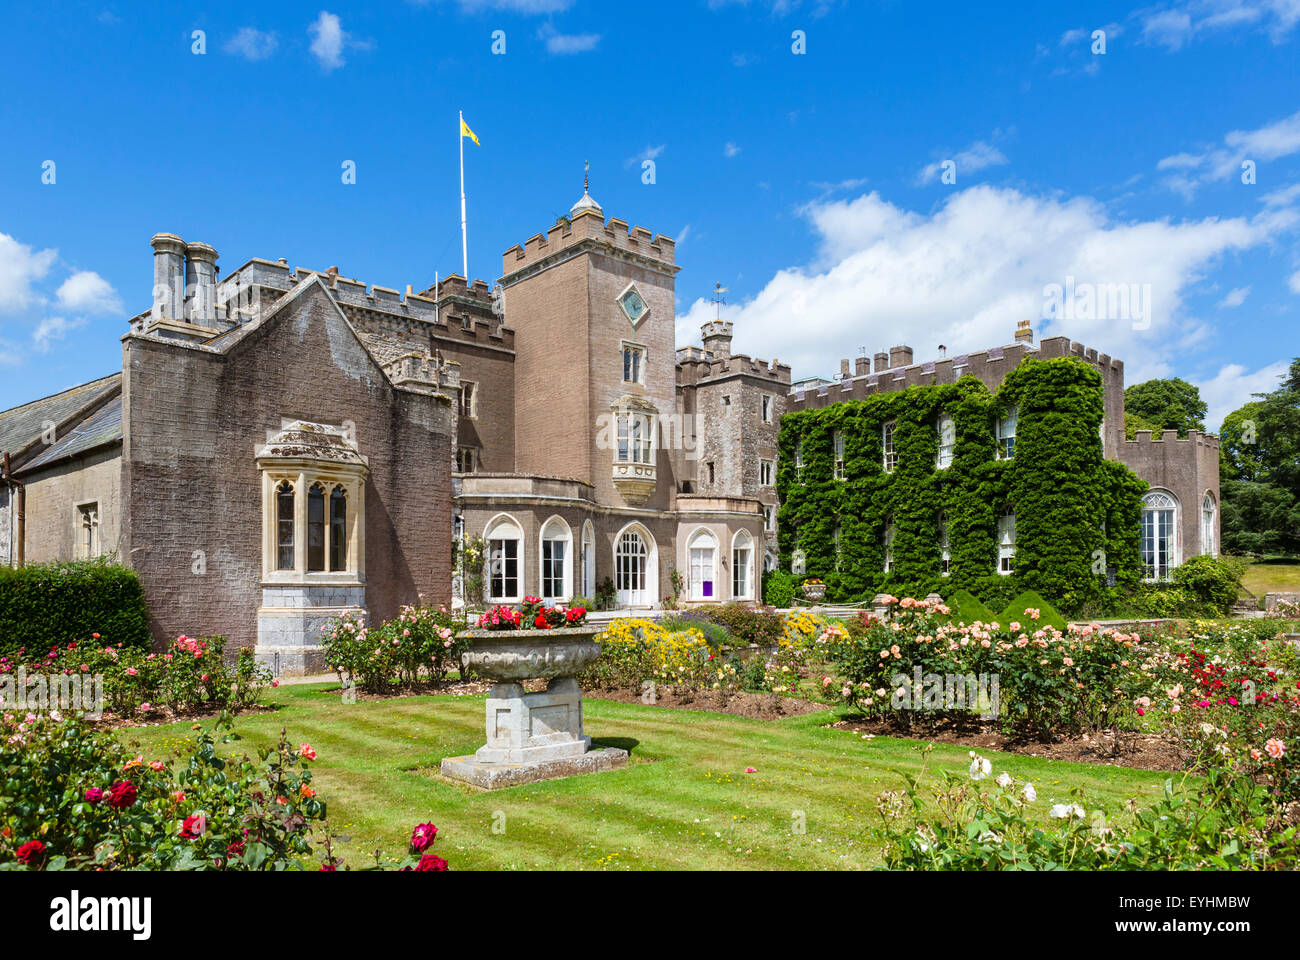 La maison et les jardins historiques à Powderham Castle, Kenton, près d'Exeter, Devon, Angleterre, Royaume-Uni Banque D'Images